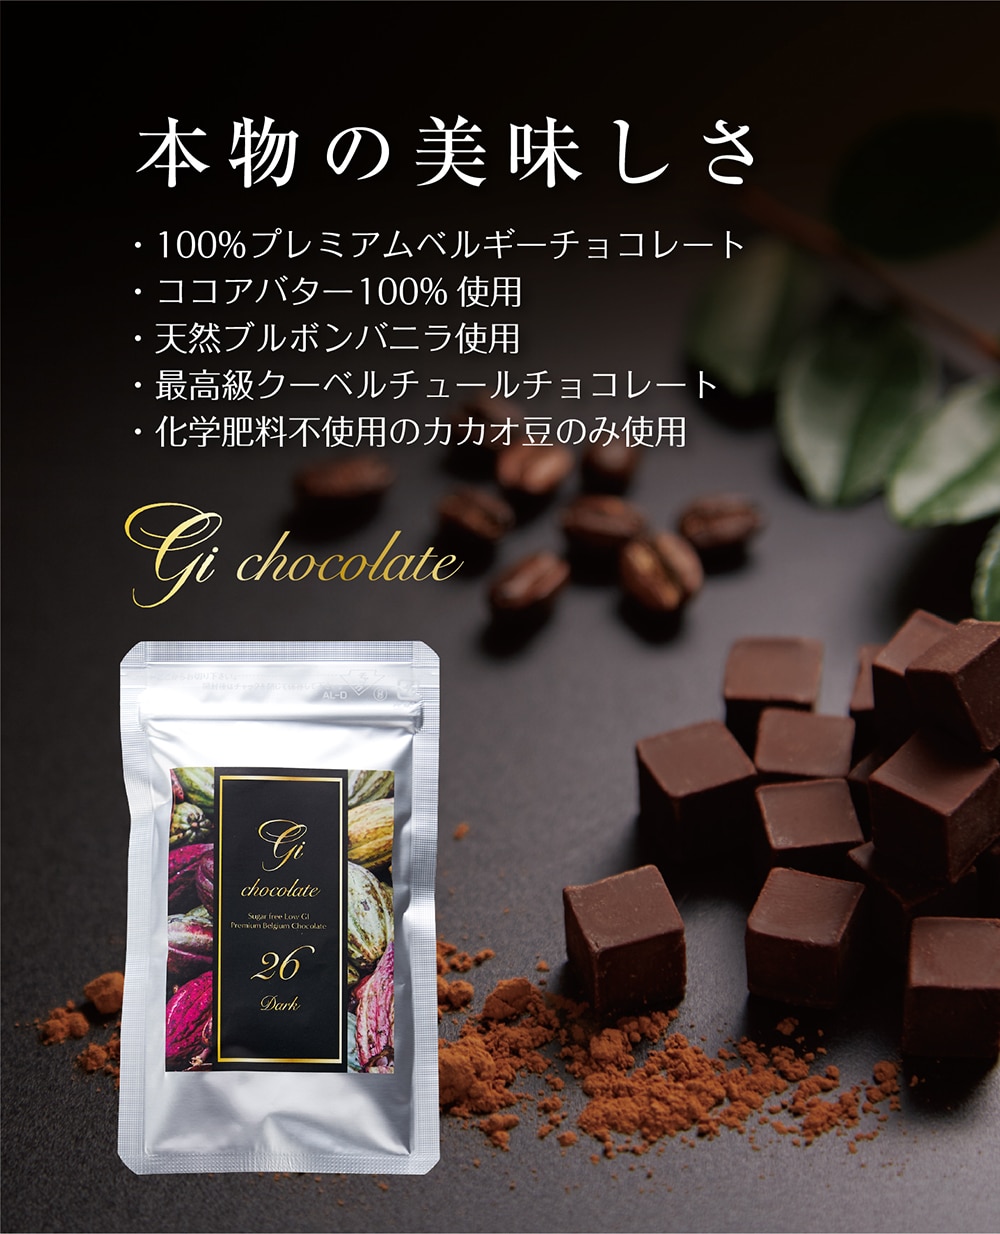 低G I・砂糖不使用の高カカオチョコレートならGi26｜罪悪感ゼロのチョコレート